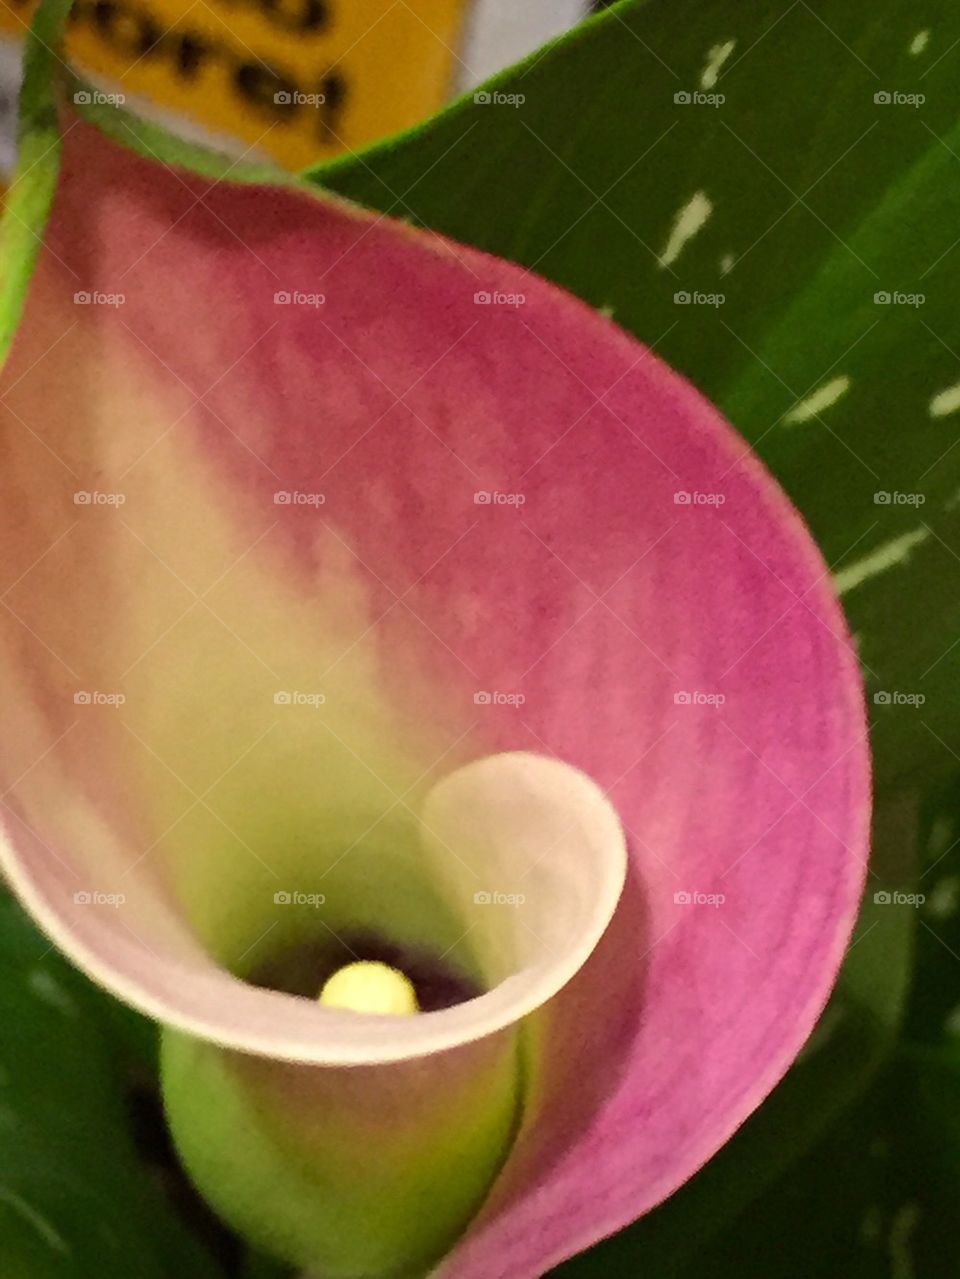 Spiraling flower